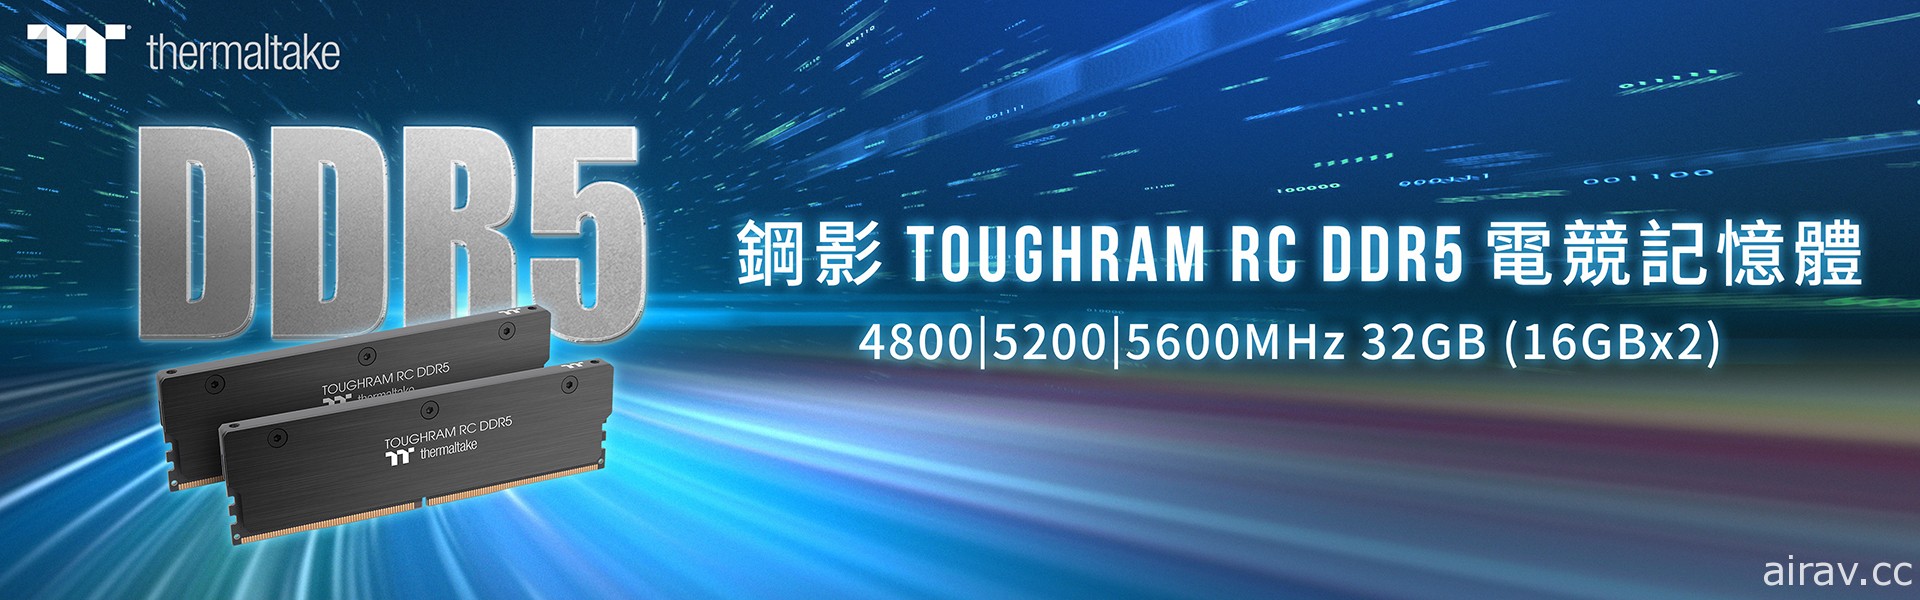 曜越鋼影 TOUGHRAM RC DDR5 記憶體上市